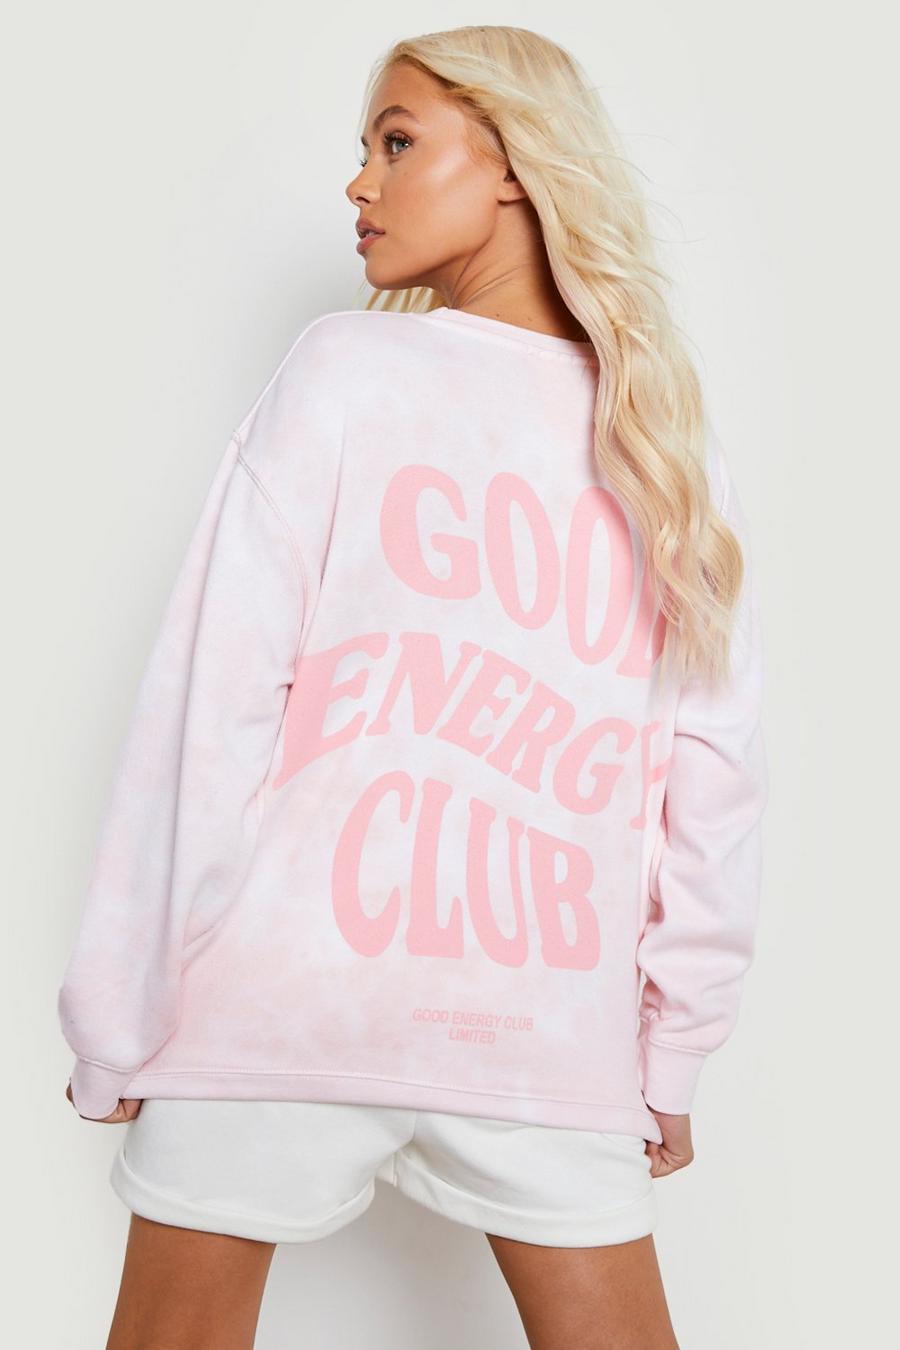 Pink Good Energy Club Printed Tie Dye Sweater image number 1